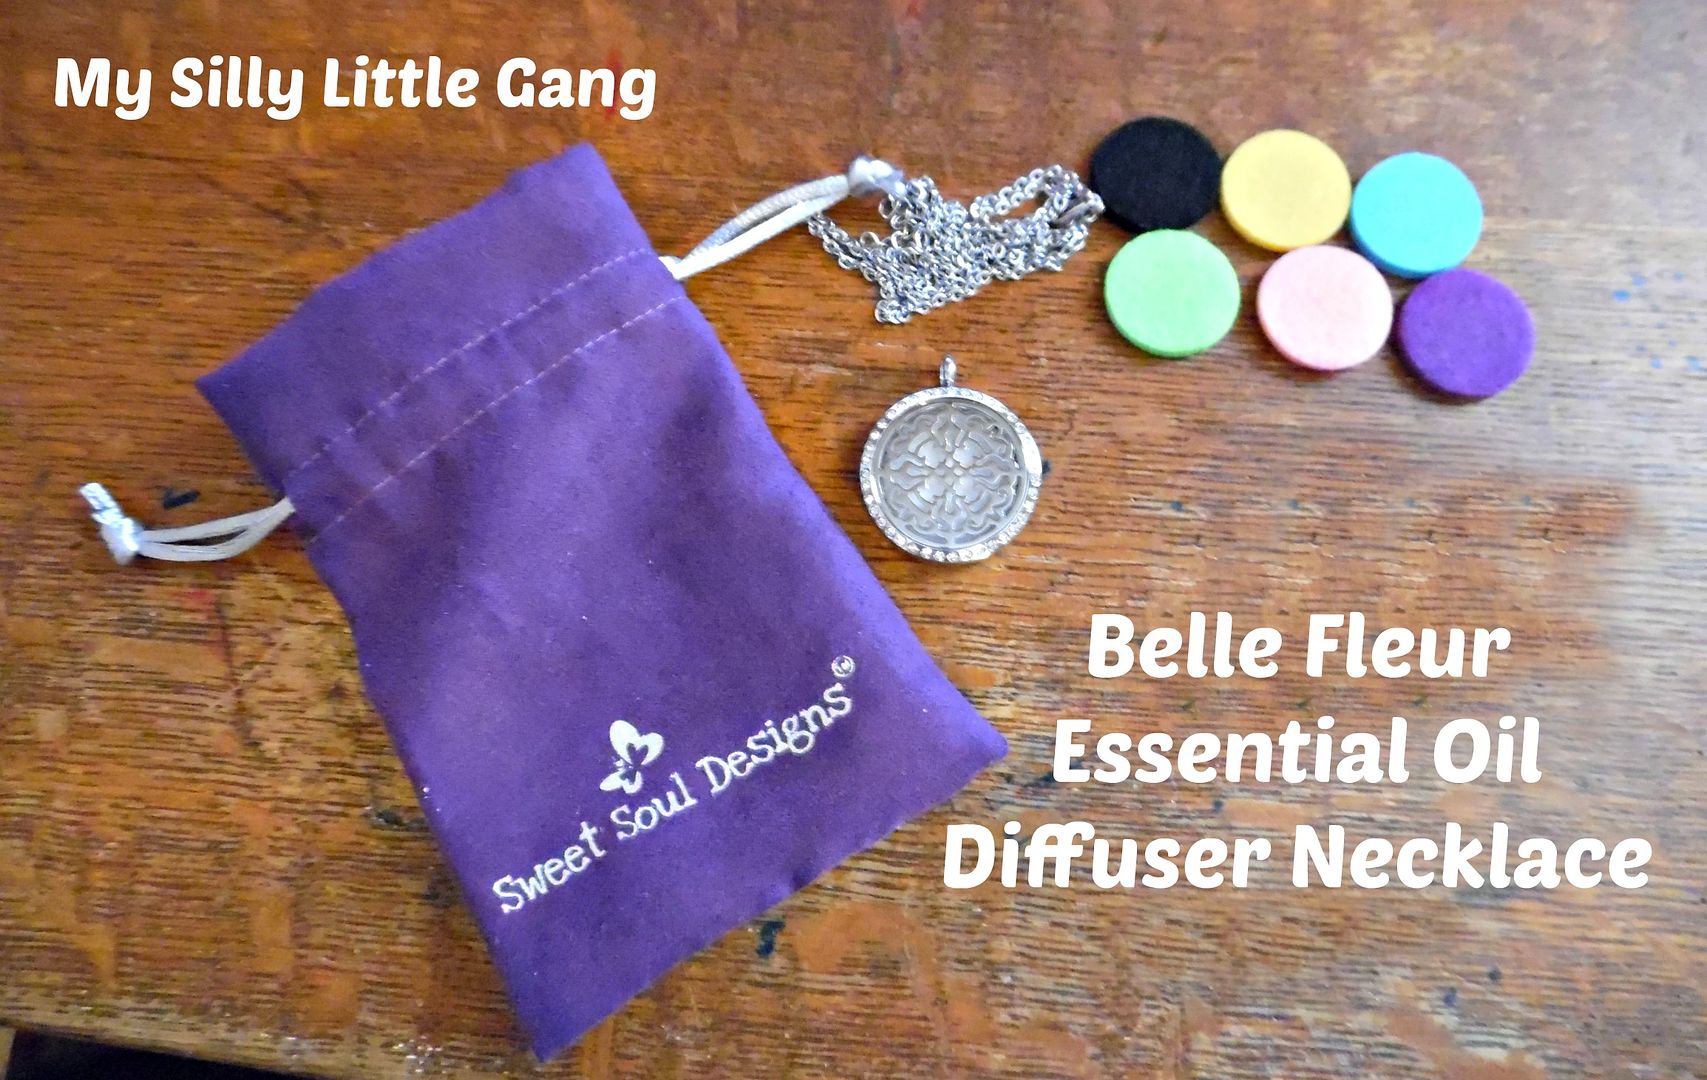 Belle Fleur Essential Oil Diffuser Necklace